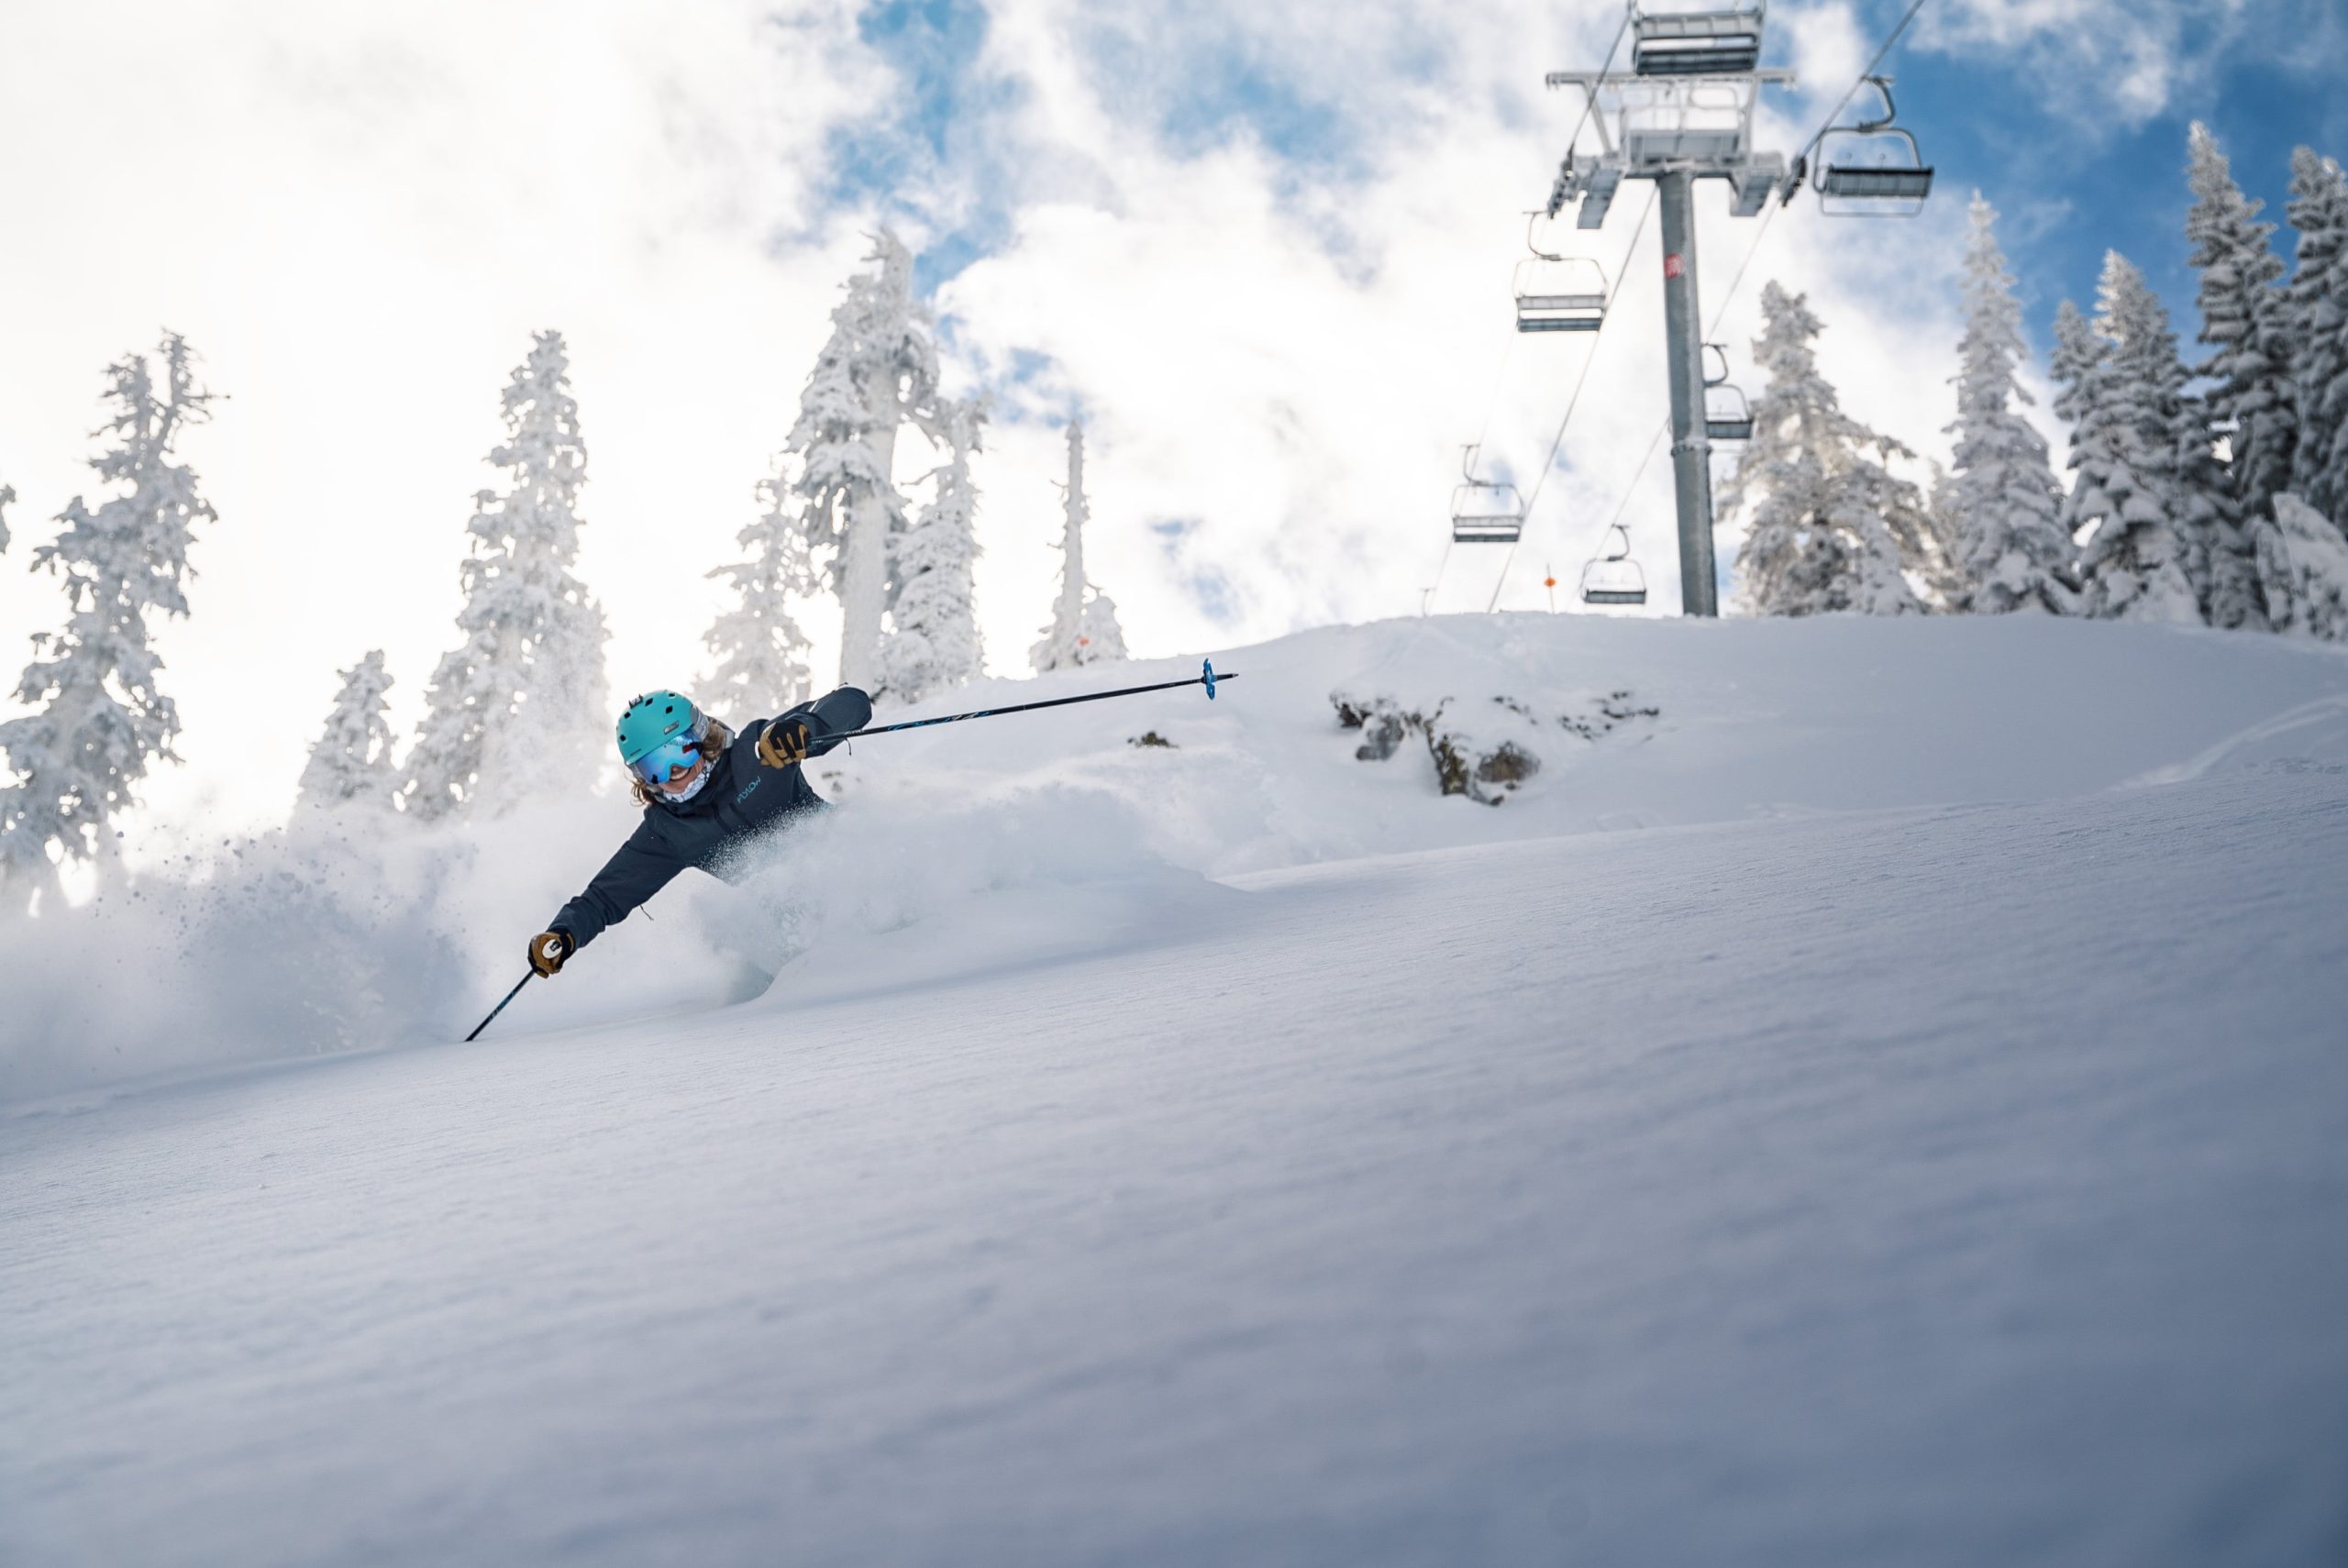 Skier turns in untouched powder